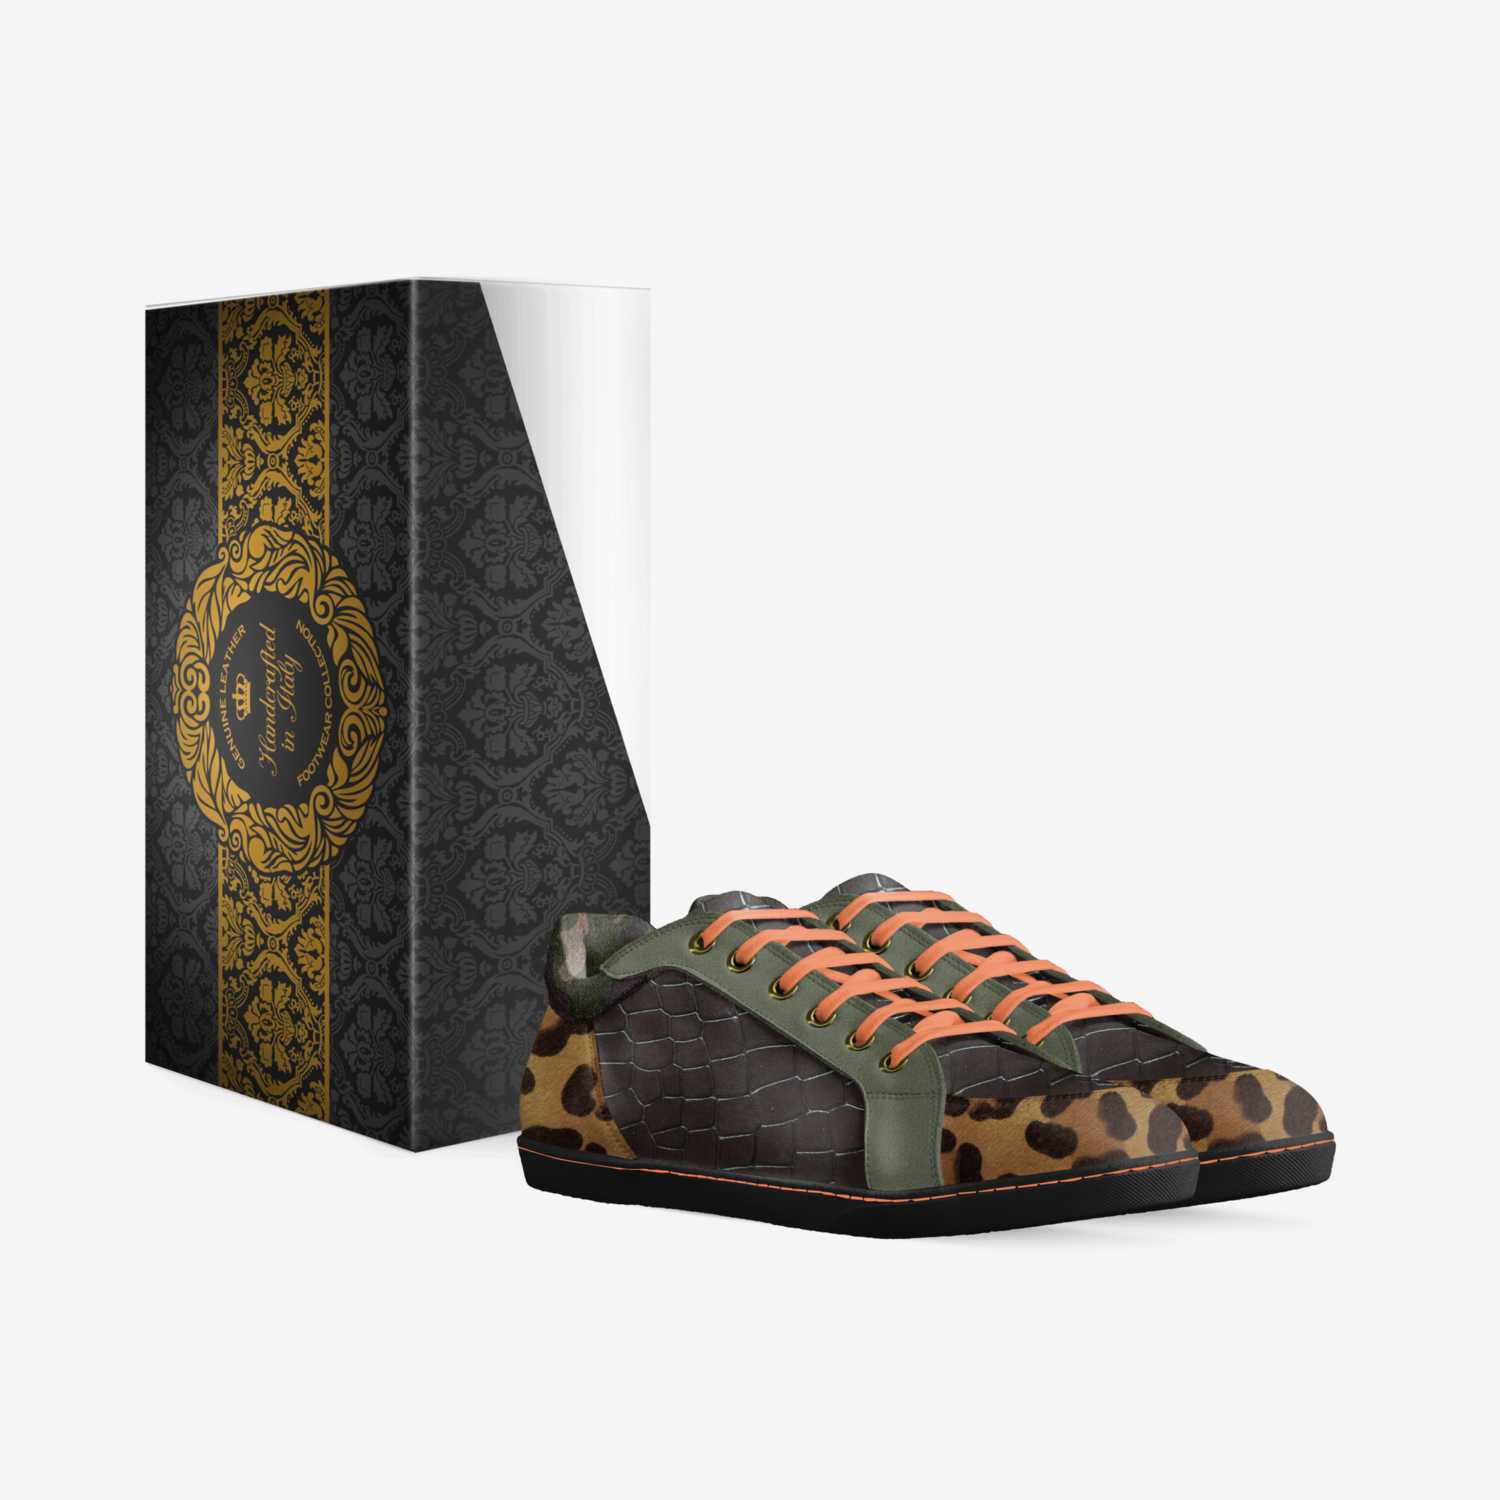 Grottoe custom made in Italy shoes by John Koly | Box view